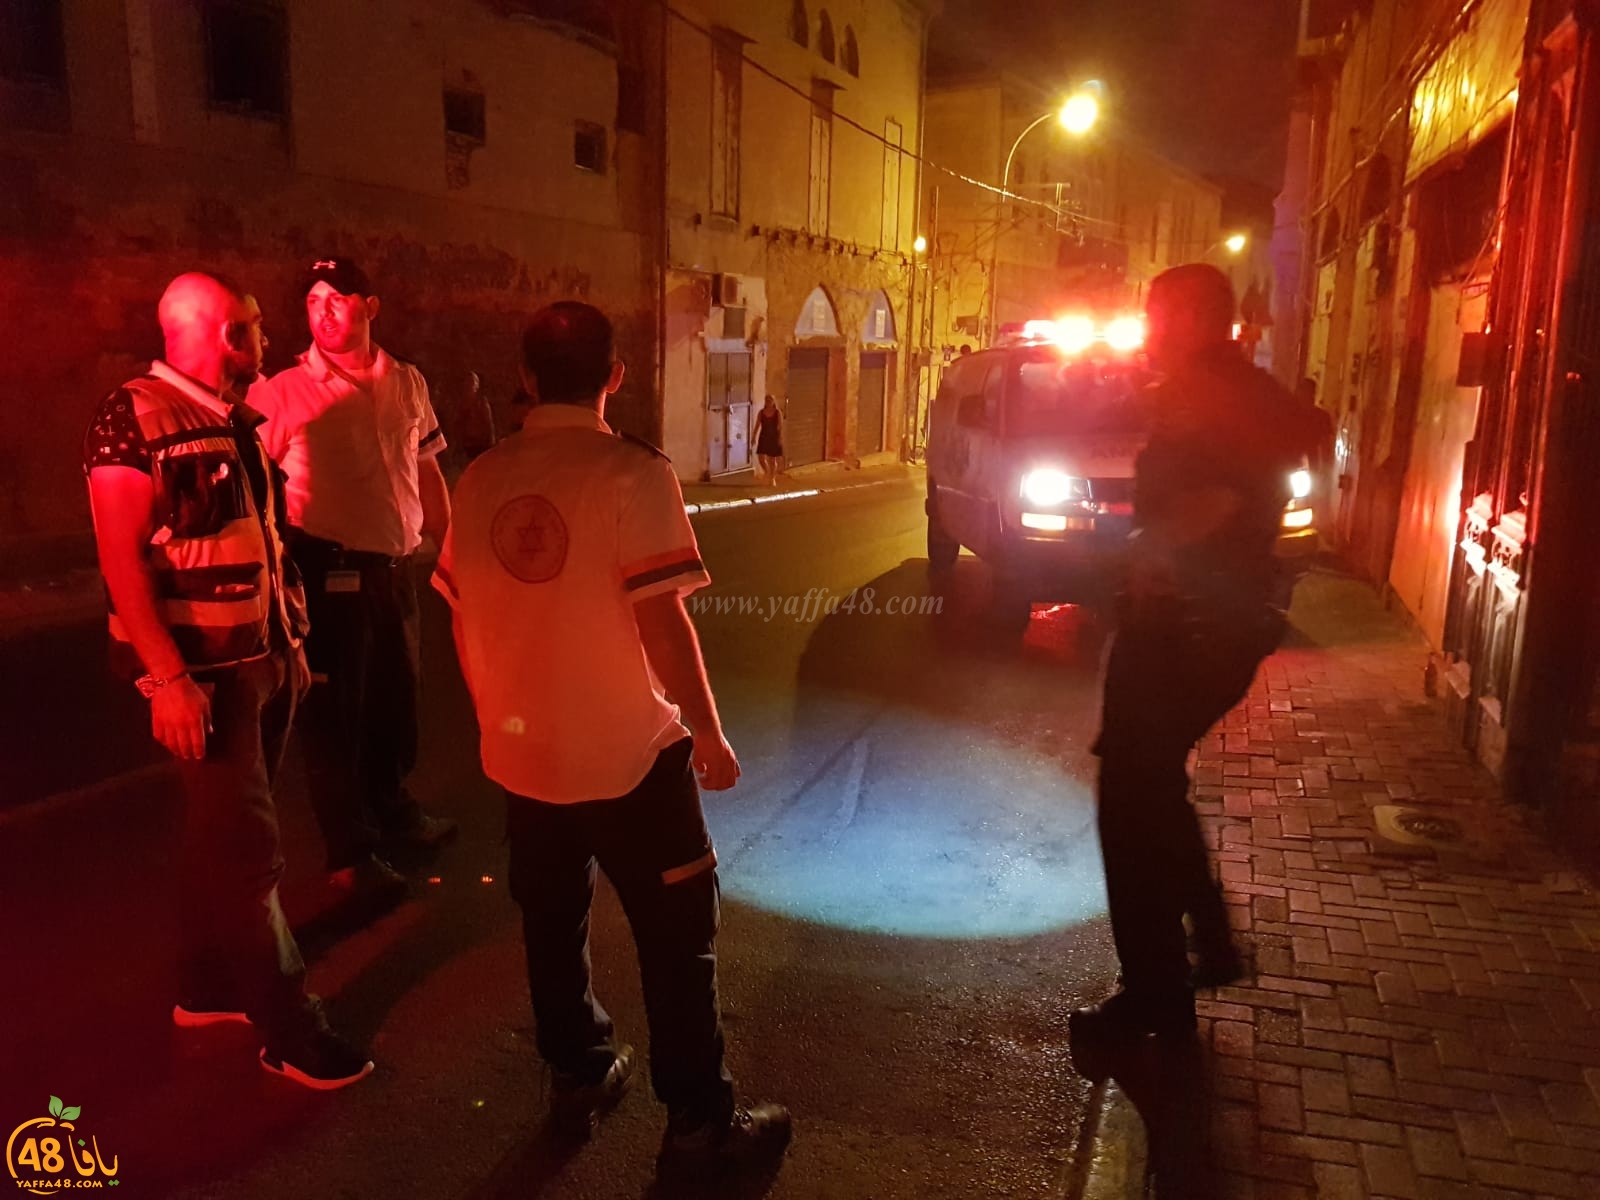  يافا - الشرطة: القاء قنبلة صوتية في شارع ييفت دون وقوع اصابات 